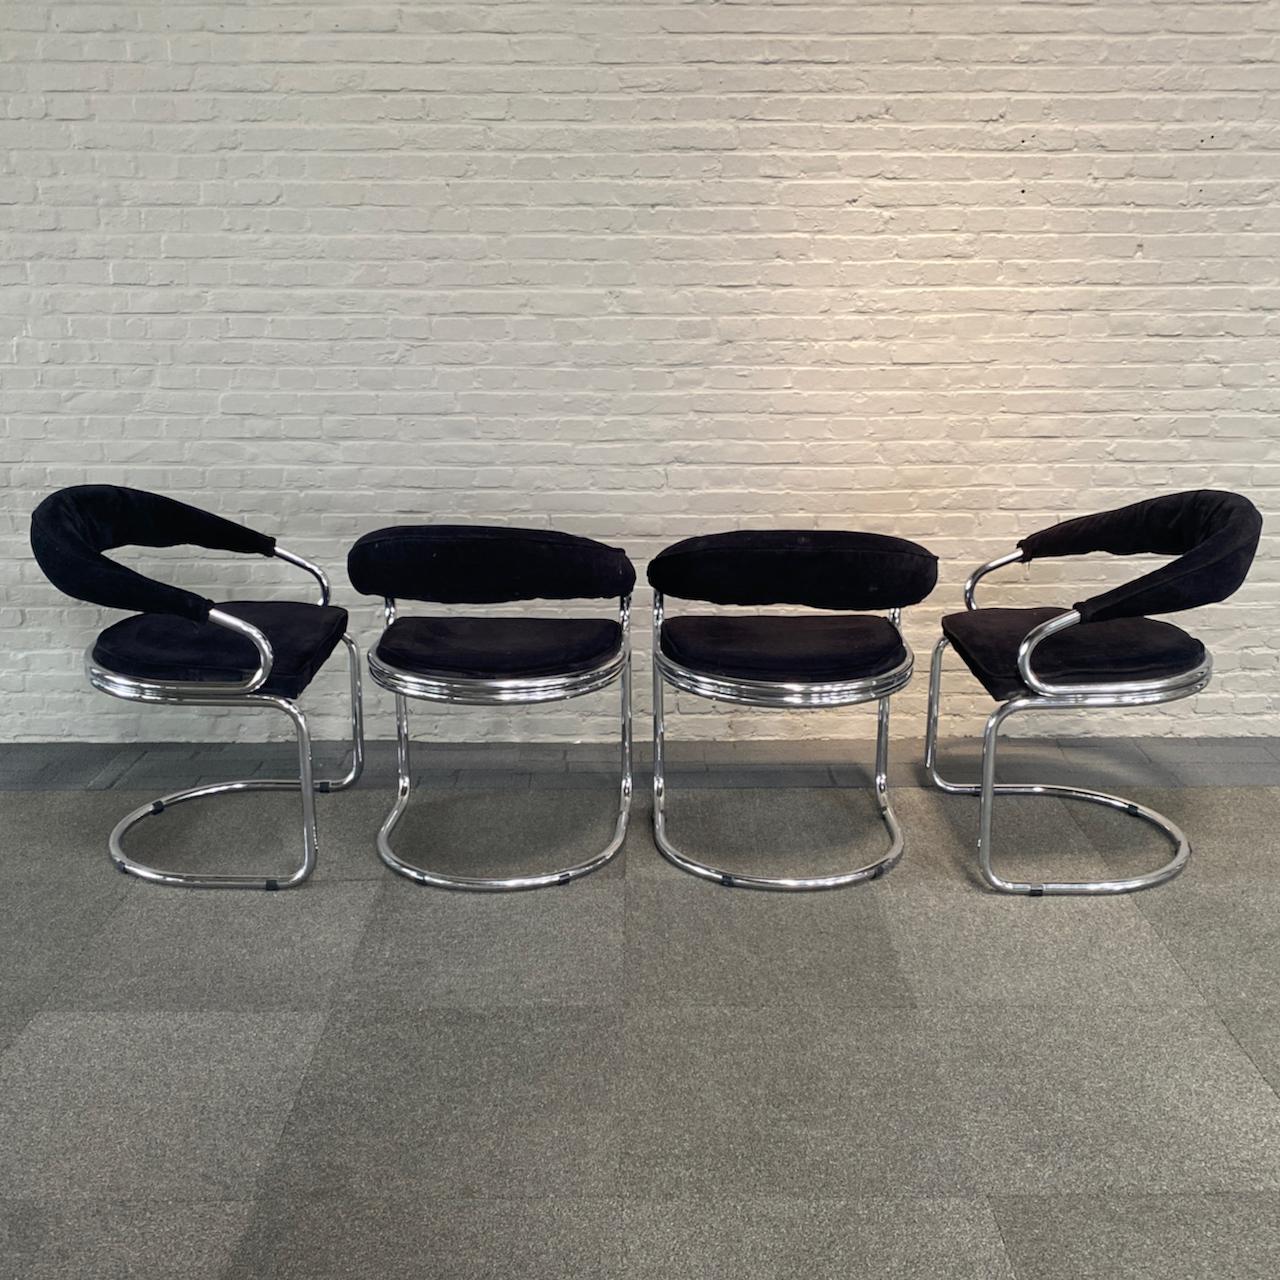 Ensemble de 4 chaises courbées en velours noir avec une structure tubulaire chromée.
Ces chaises sont en très bon état vintage.
Le revêtement en velours noir est, à notre connaissance, d'origine.
Même le chromage est étonnant, compte tenu du fait